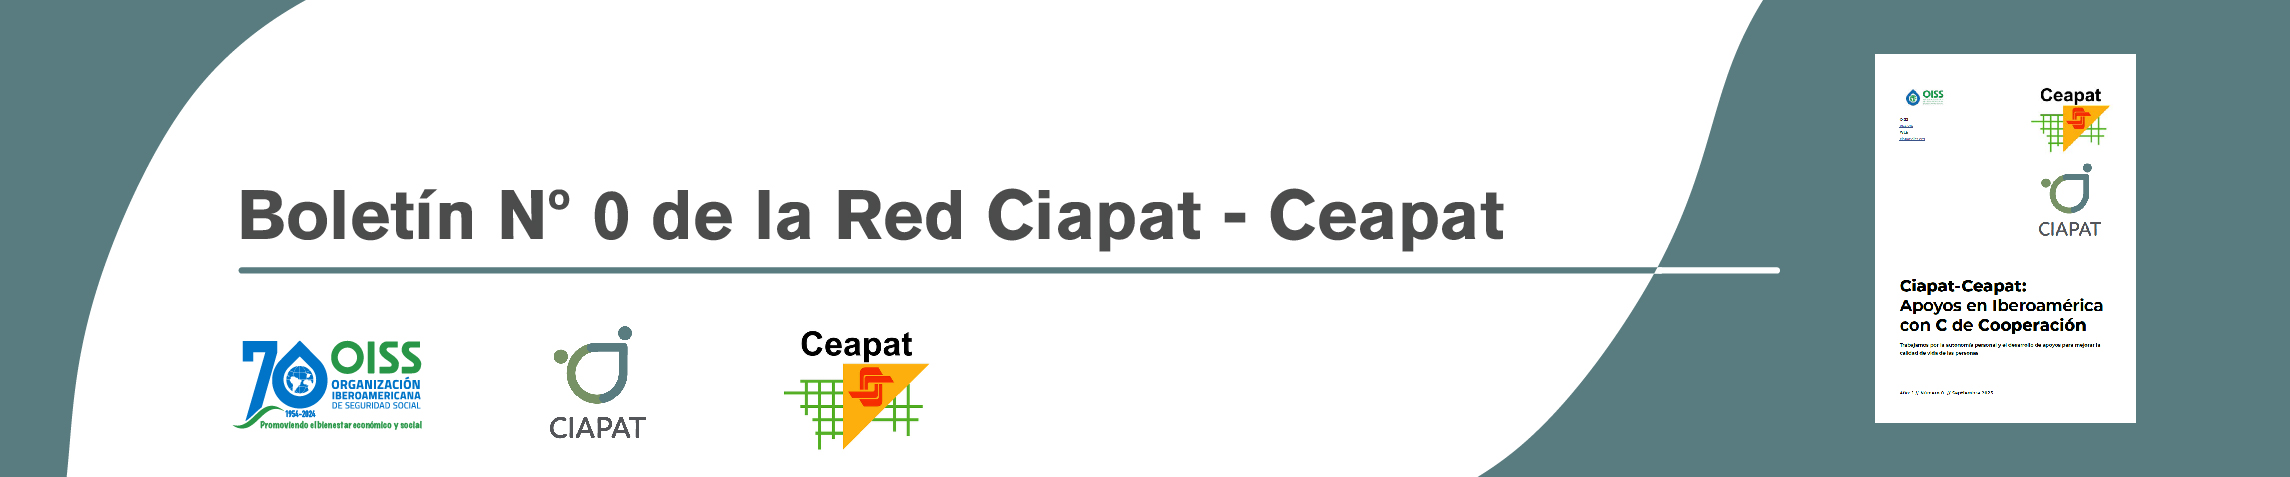 En la imagen se ve la portada del número cero del boletín de la Red Ciapat - Ceapat junto a los logos de OISS, Ciapat y Ceapat.